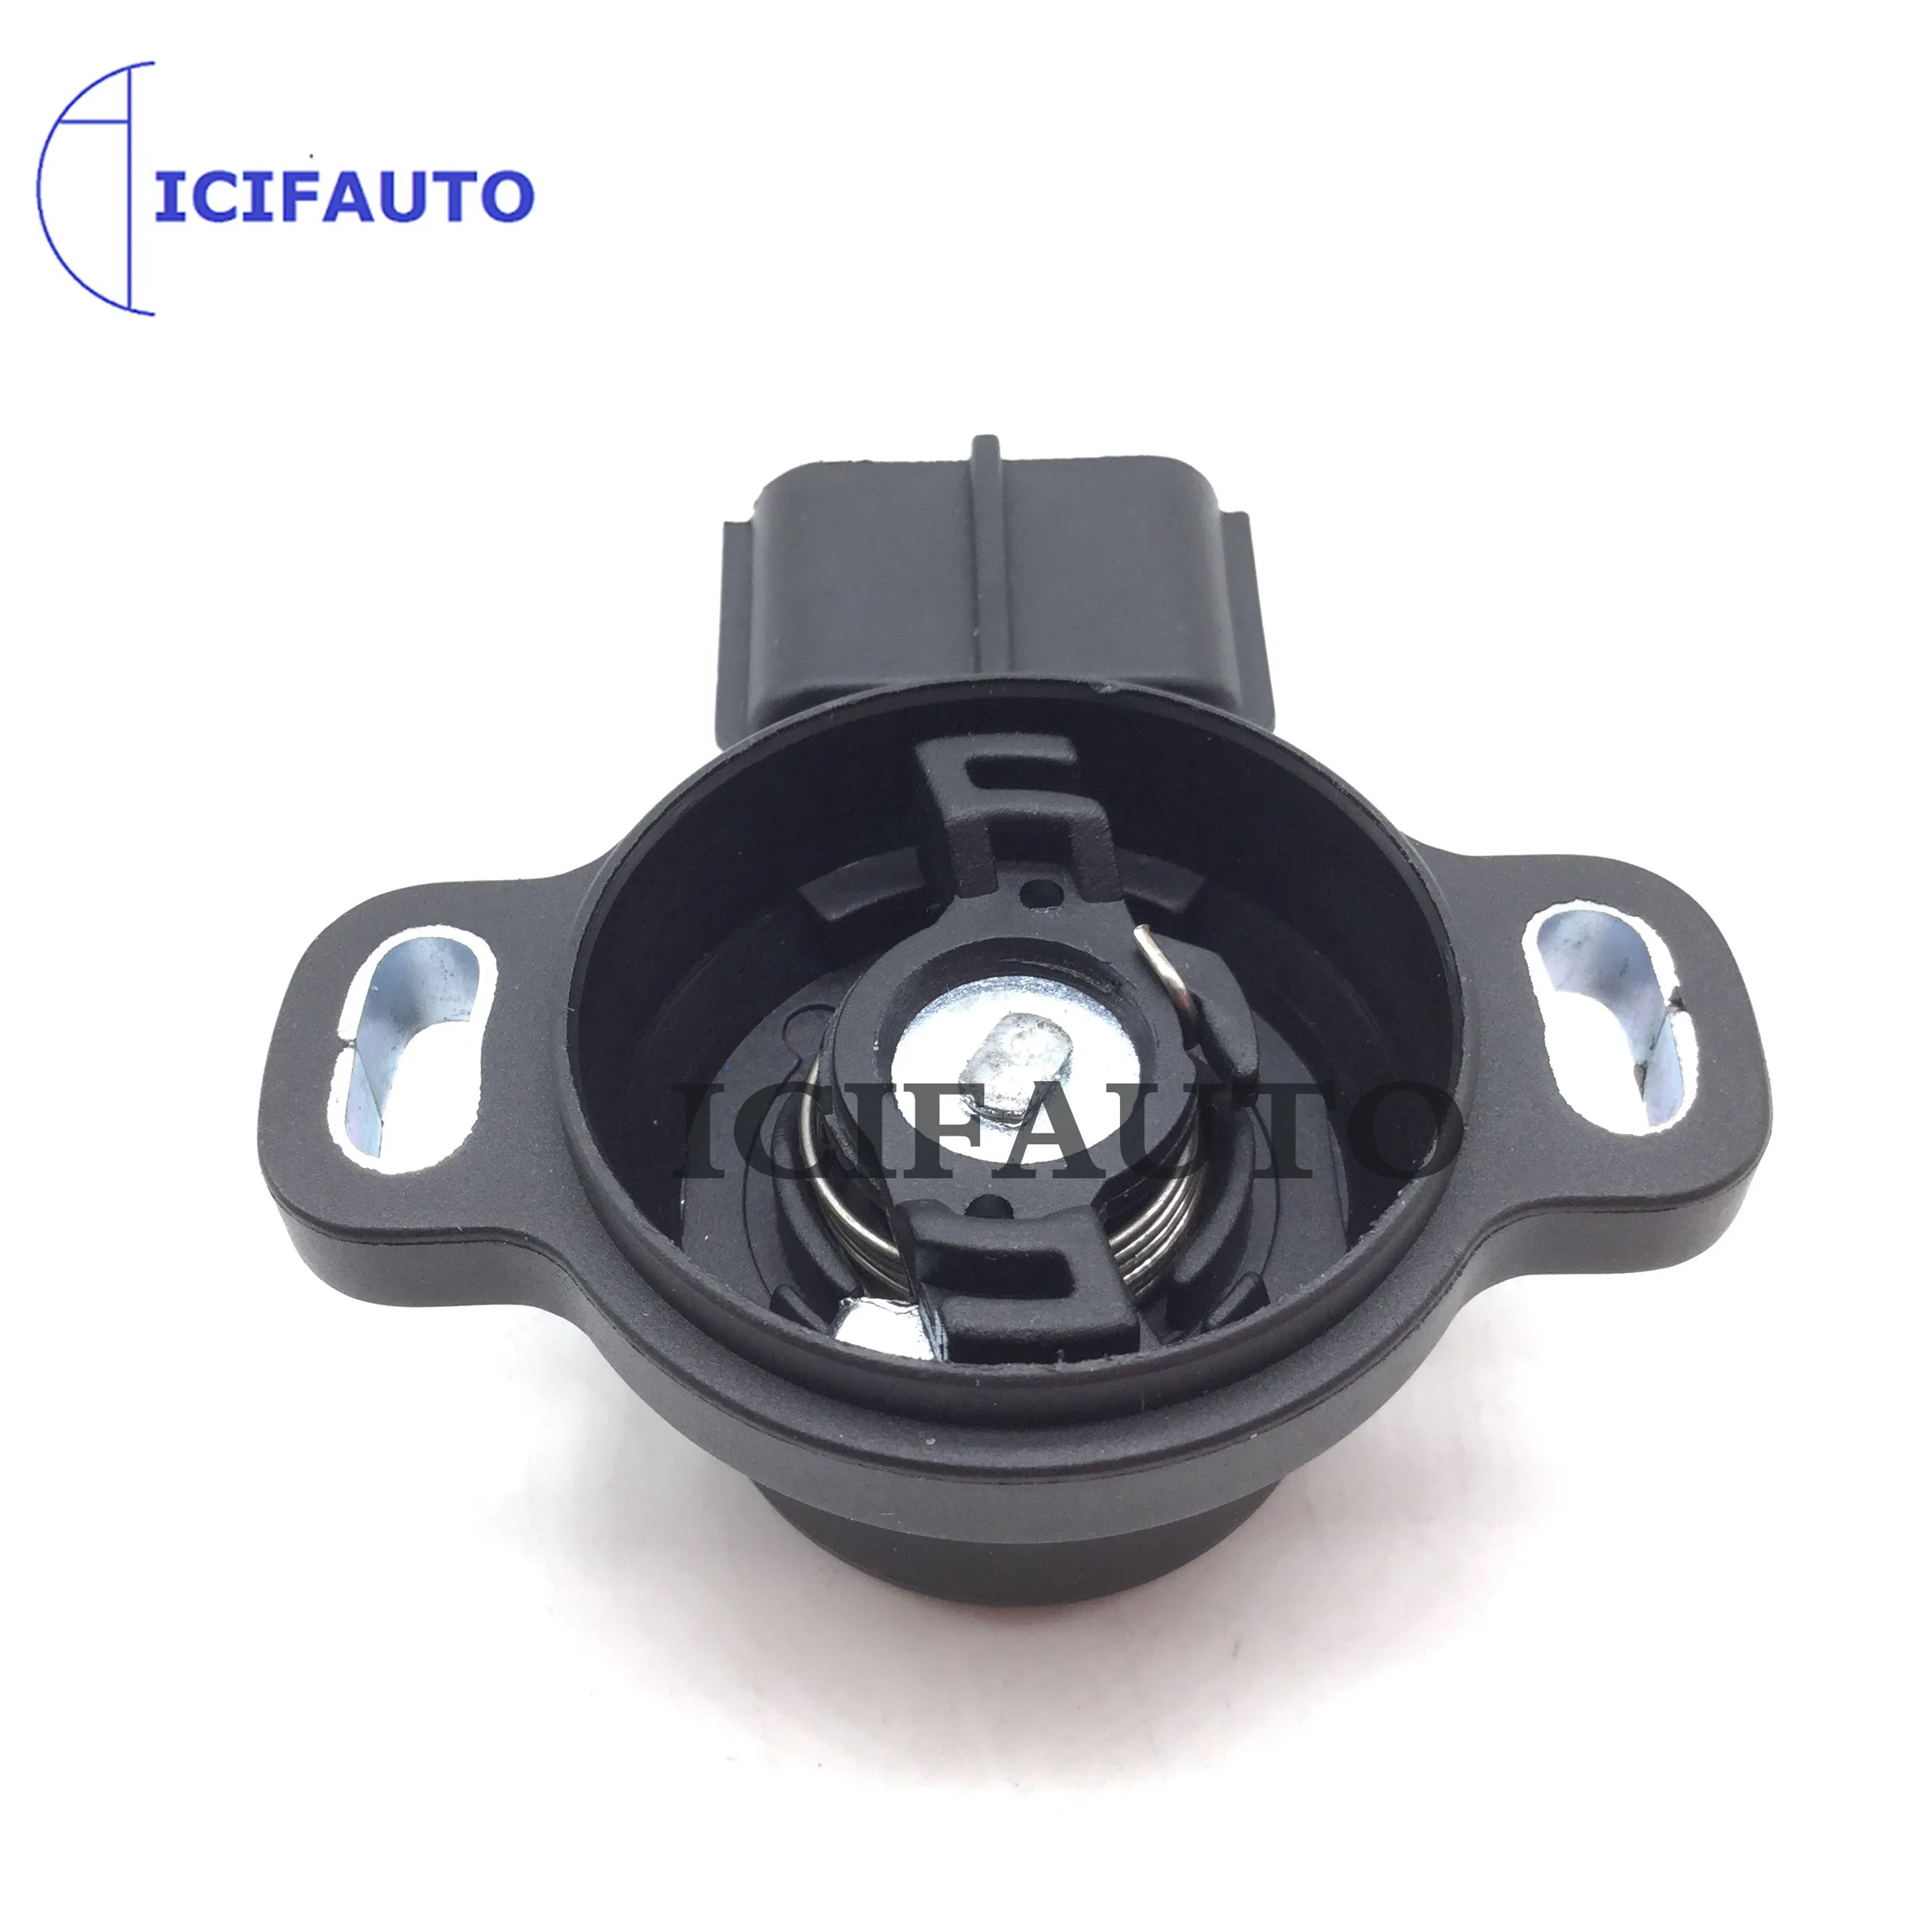 

TPS Throttle Position Sensor For Kia Sephia Mazda Protege 1.8L L4 MB6HF18911,89452-3D140,1985-00-3200,B6HF-18-911